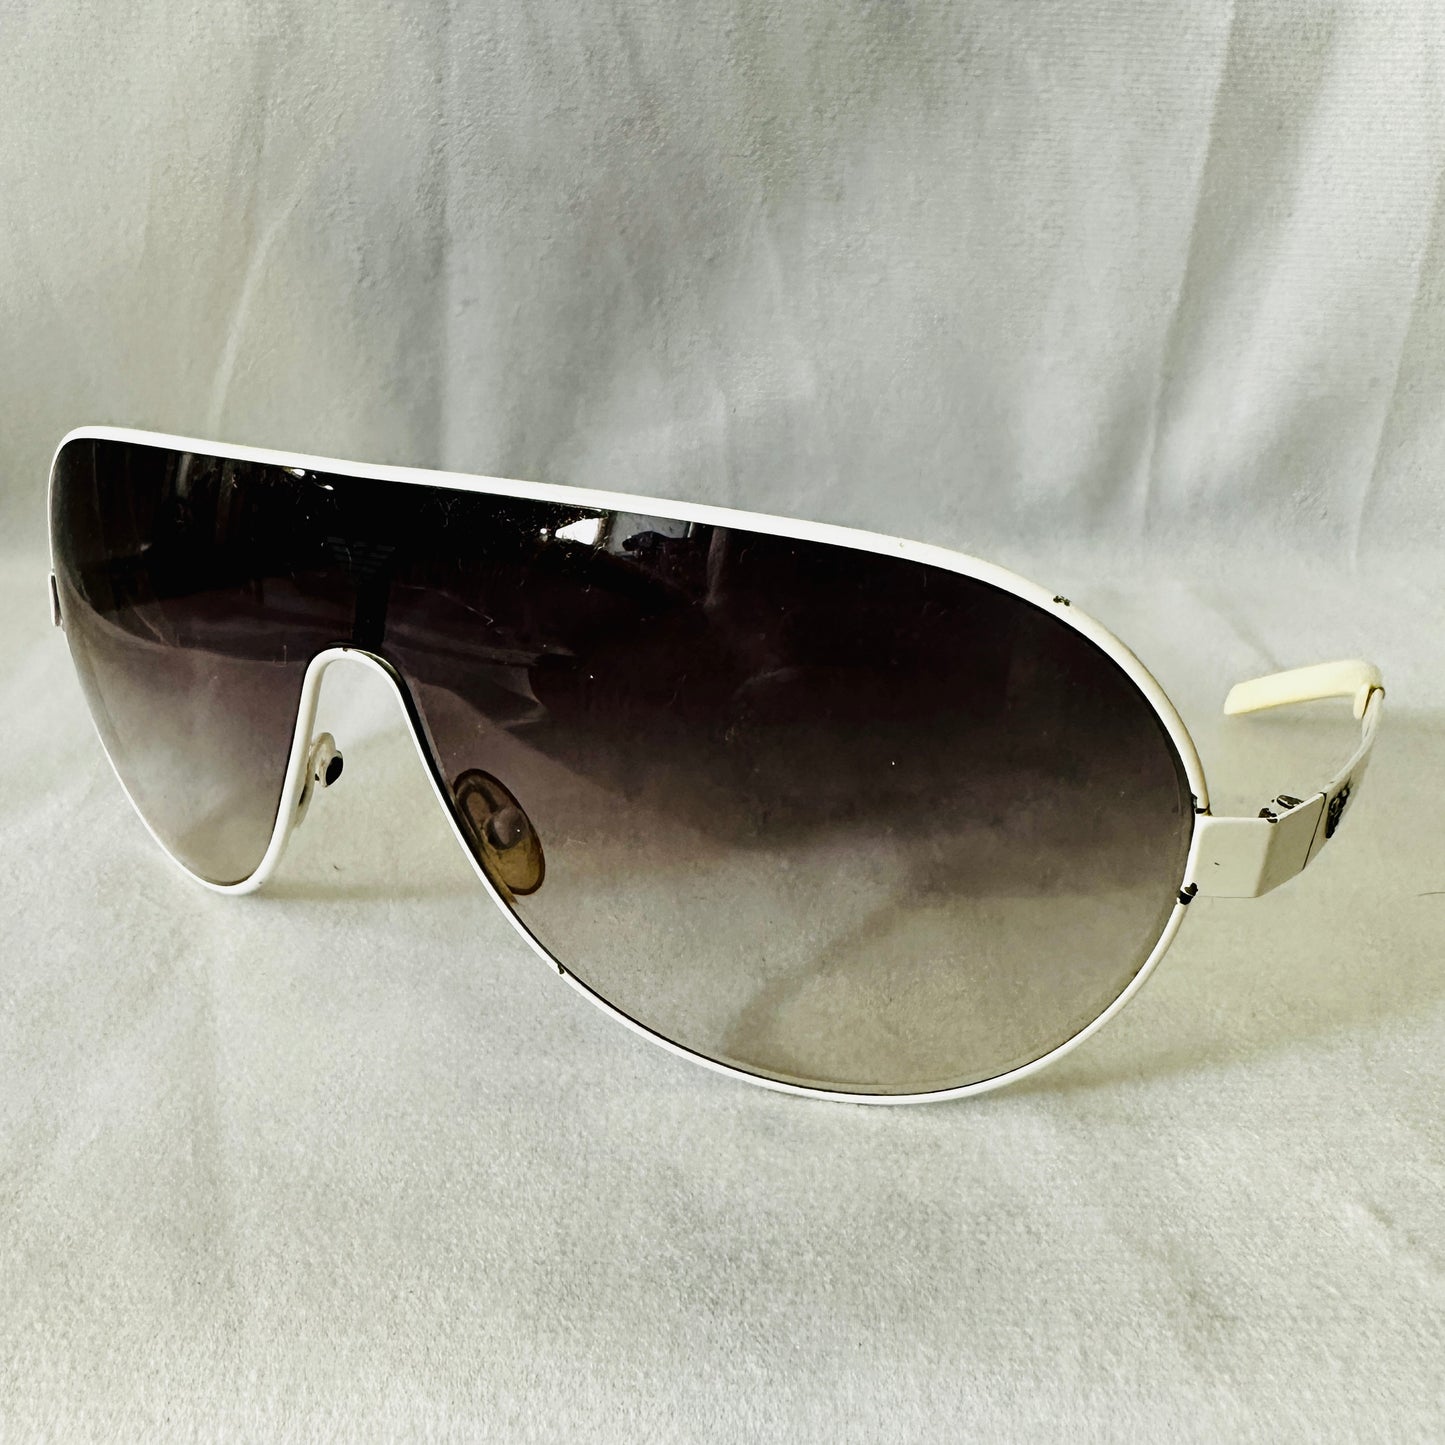 Emporio Armani Sunglasses 9047 - Made in Italy